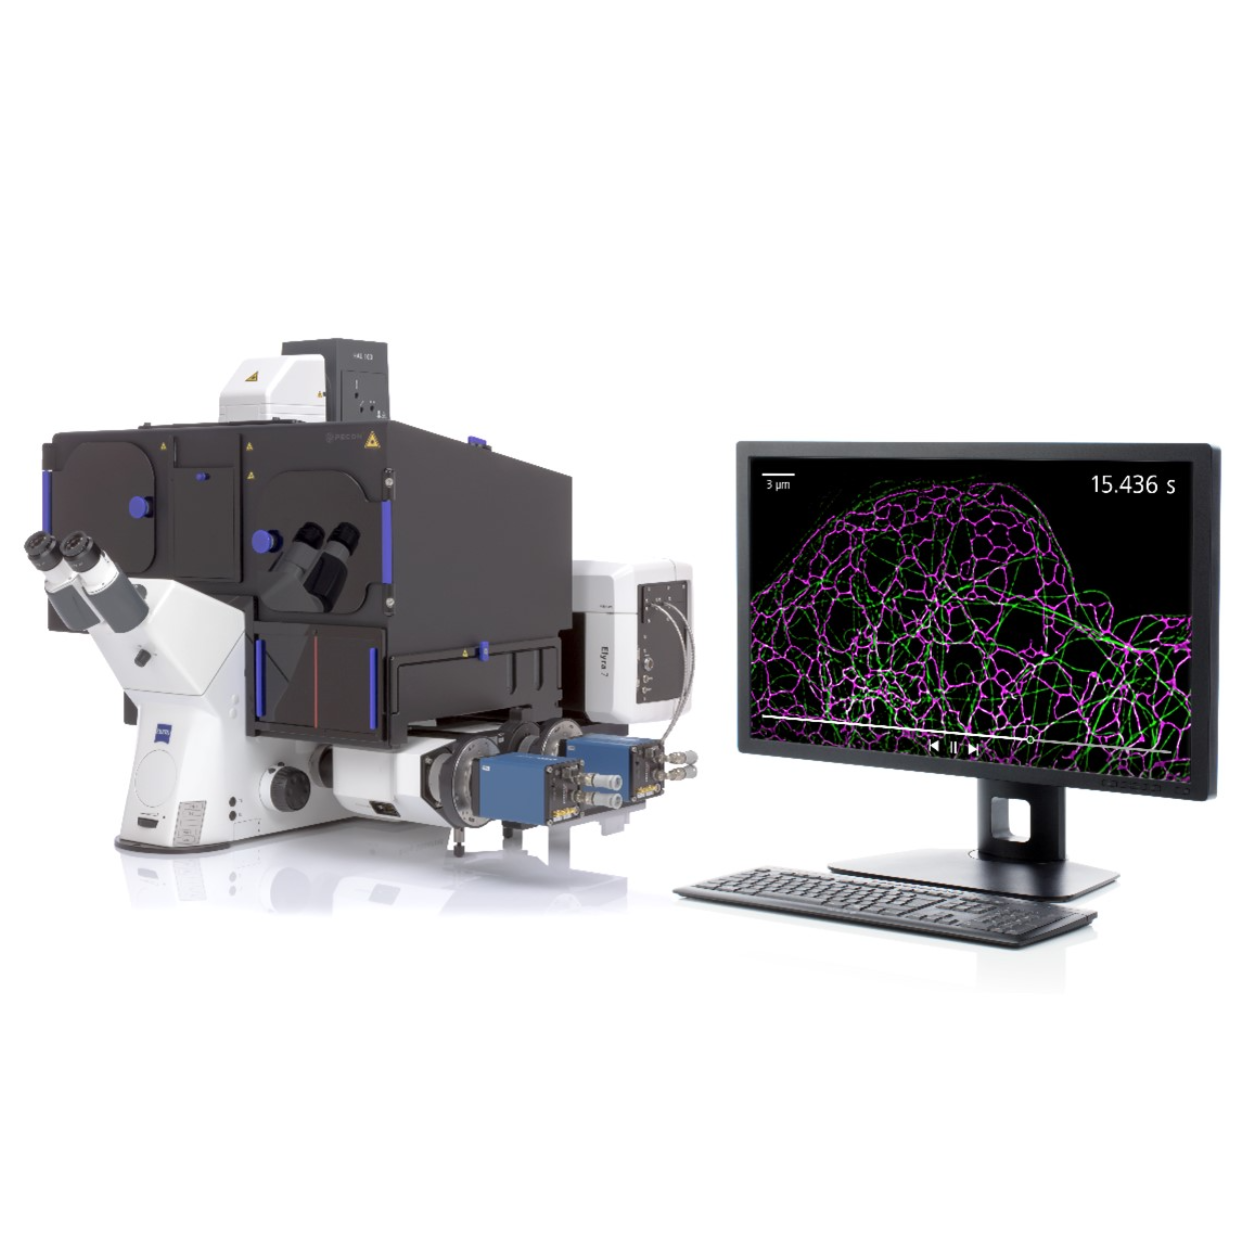 蔡司超高分辨率显微成像系统Elyra 7